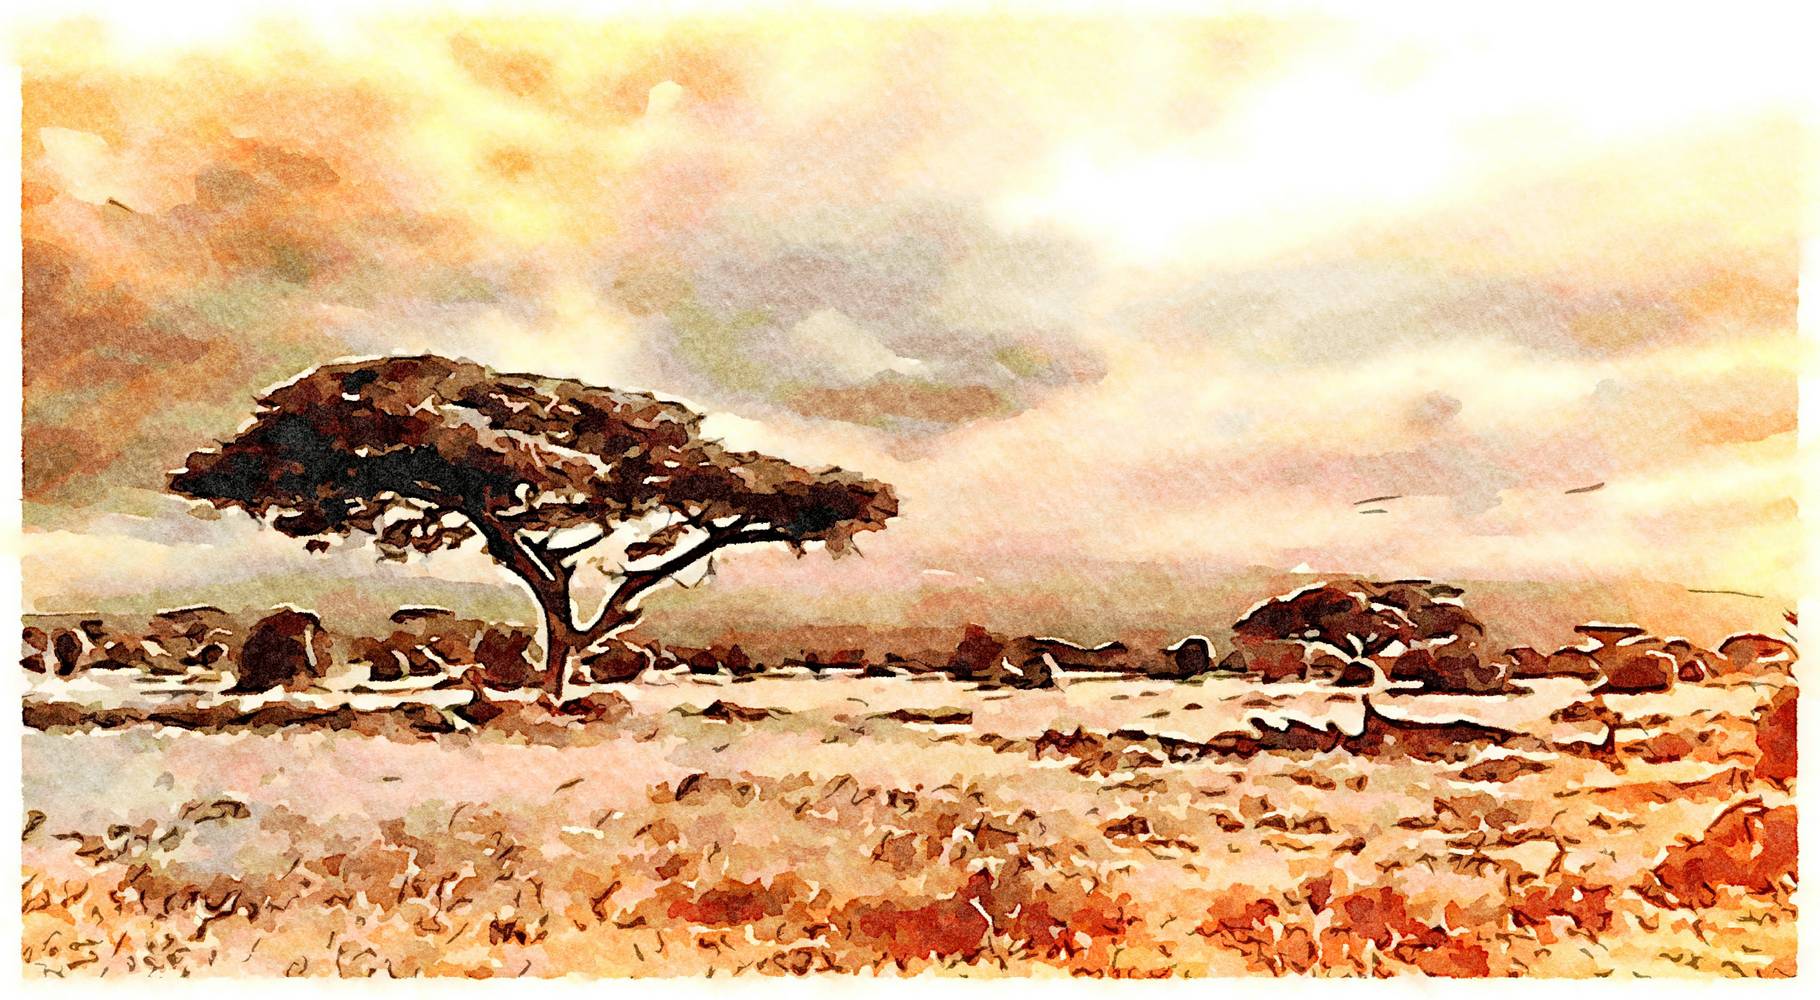 Afrikanische Landschaft als Kunstdruck oder Gemälde.